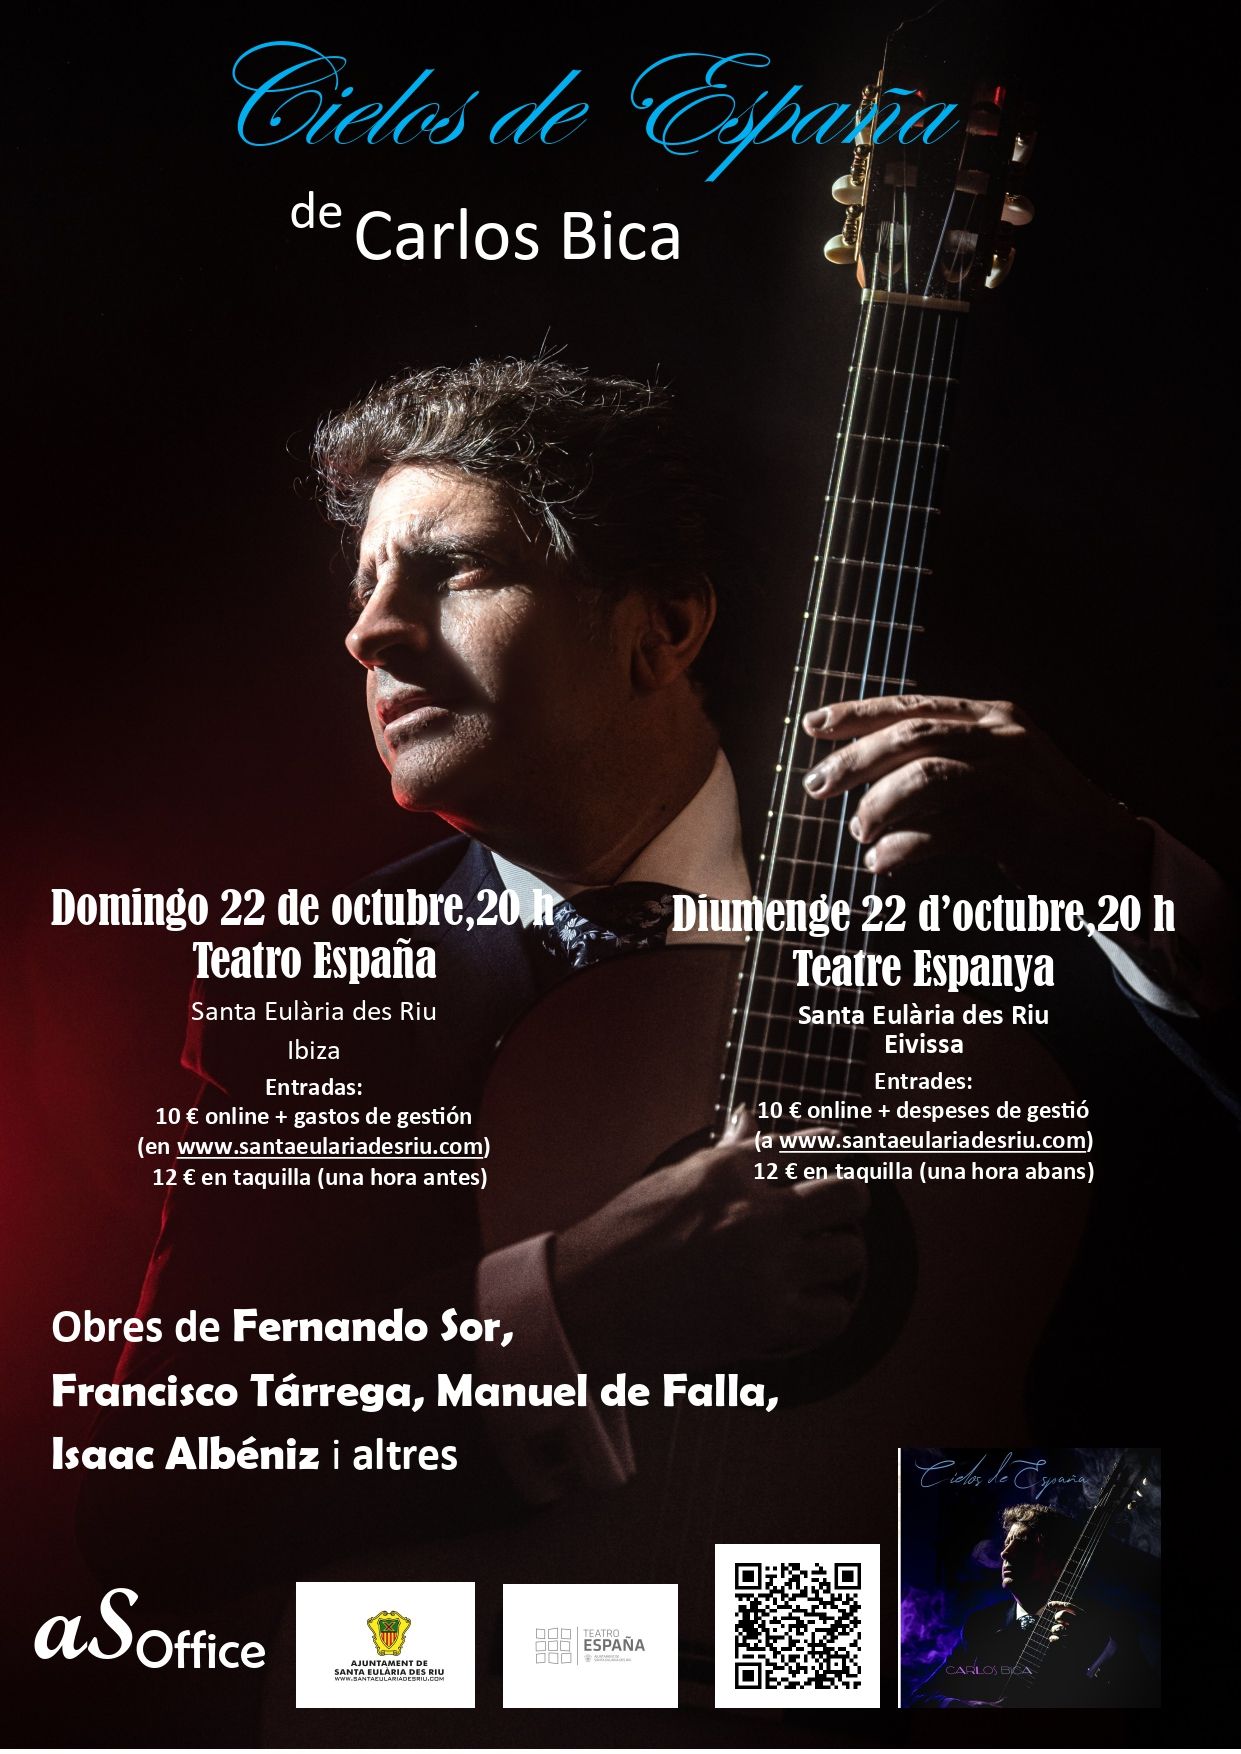 El guitarrista clásico Carlos Bica presenta en el Teatro España su homenaje a la ‘sonoridad española’ con ‘Cielos de España